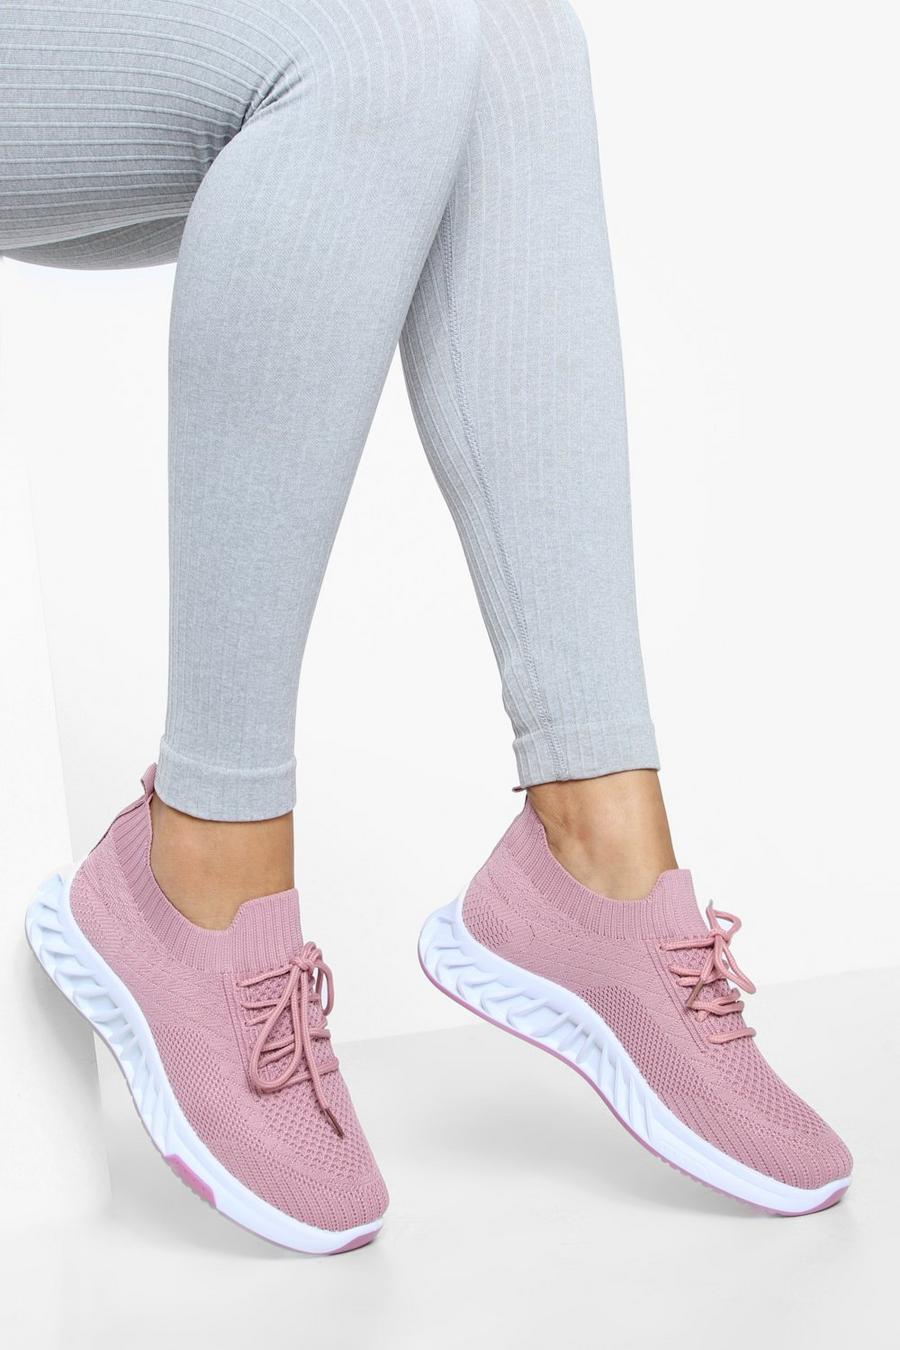 Zapatillas deportivas calcetín de tela con tiras cruzadas, Pink rosa image number 1